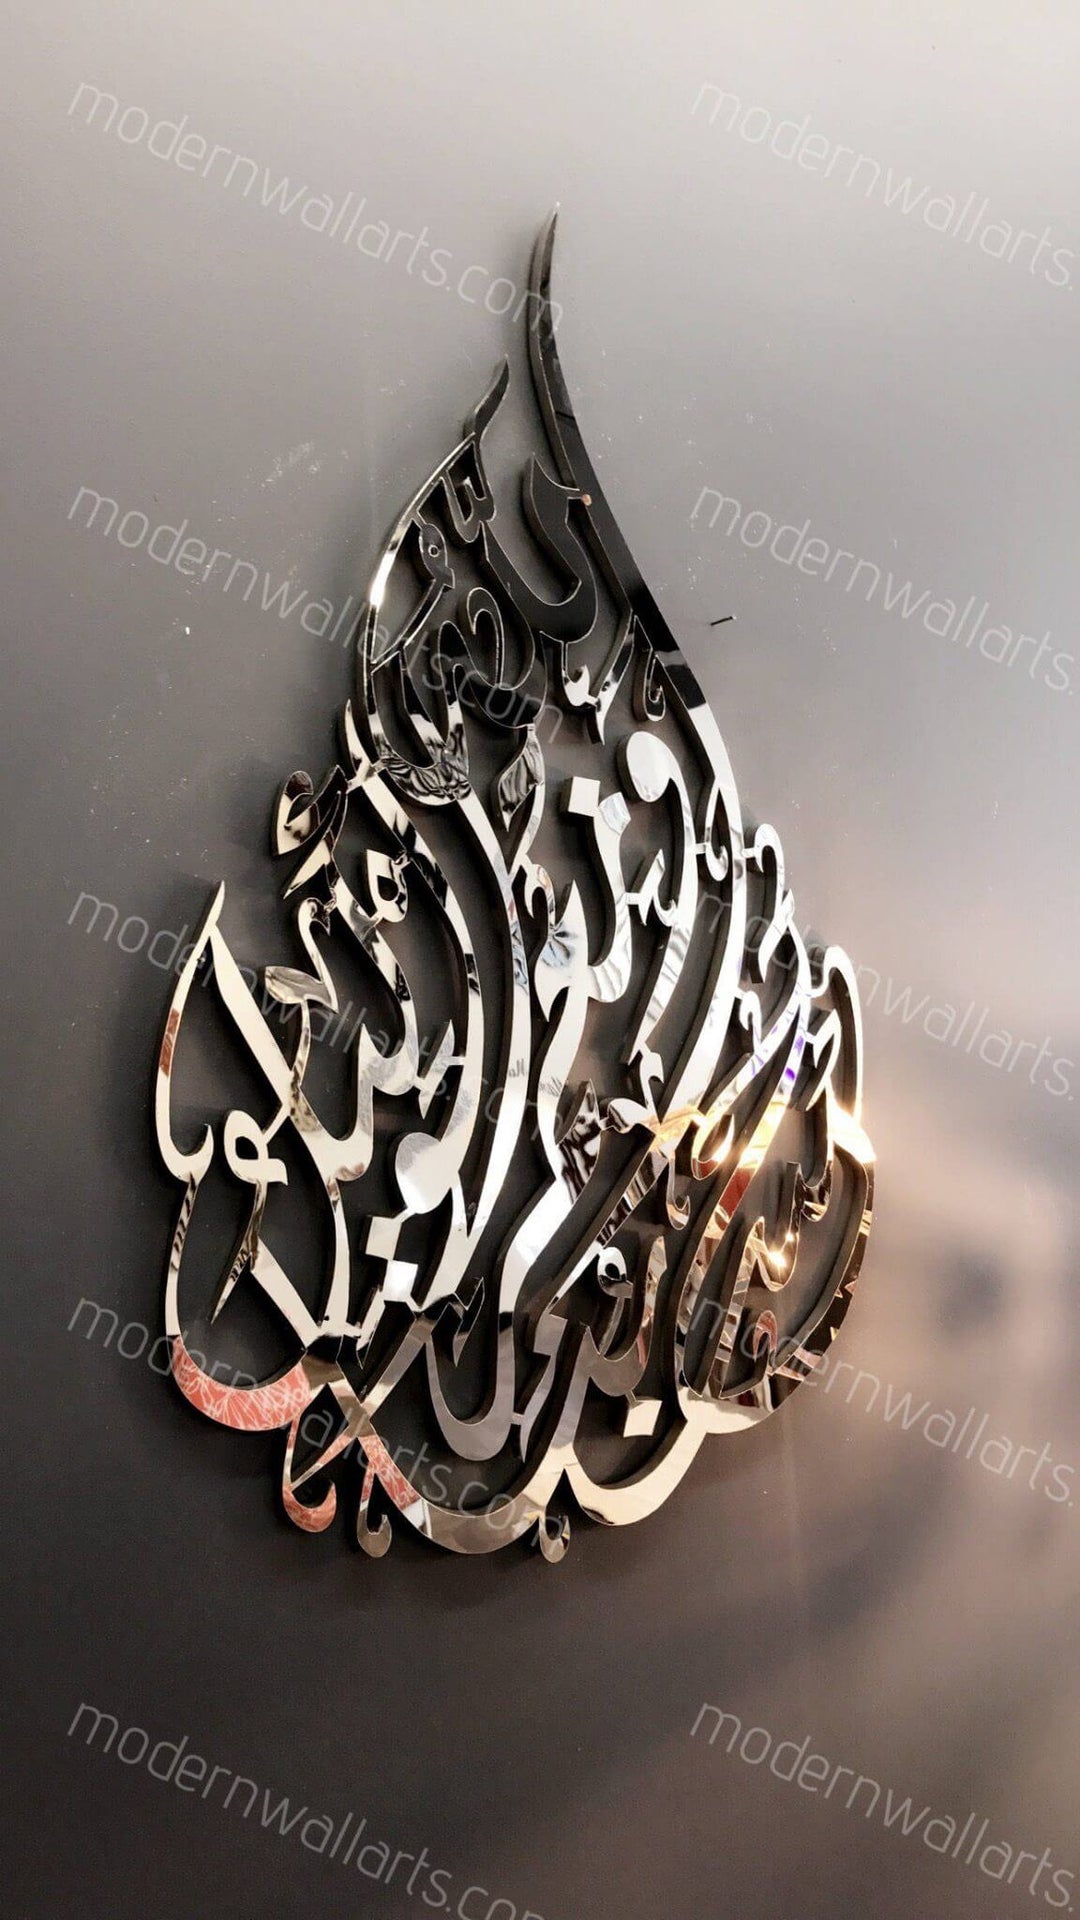 Hasbunallahu wa nimal Wakil tear drop islamic art in steel Arabic calligraphy